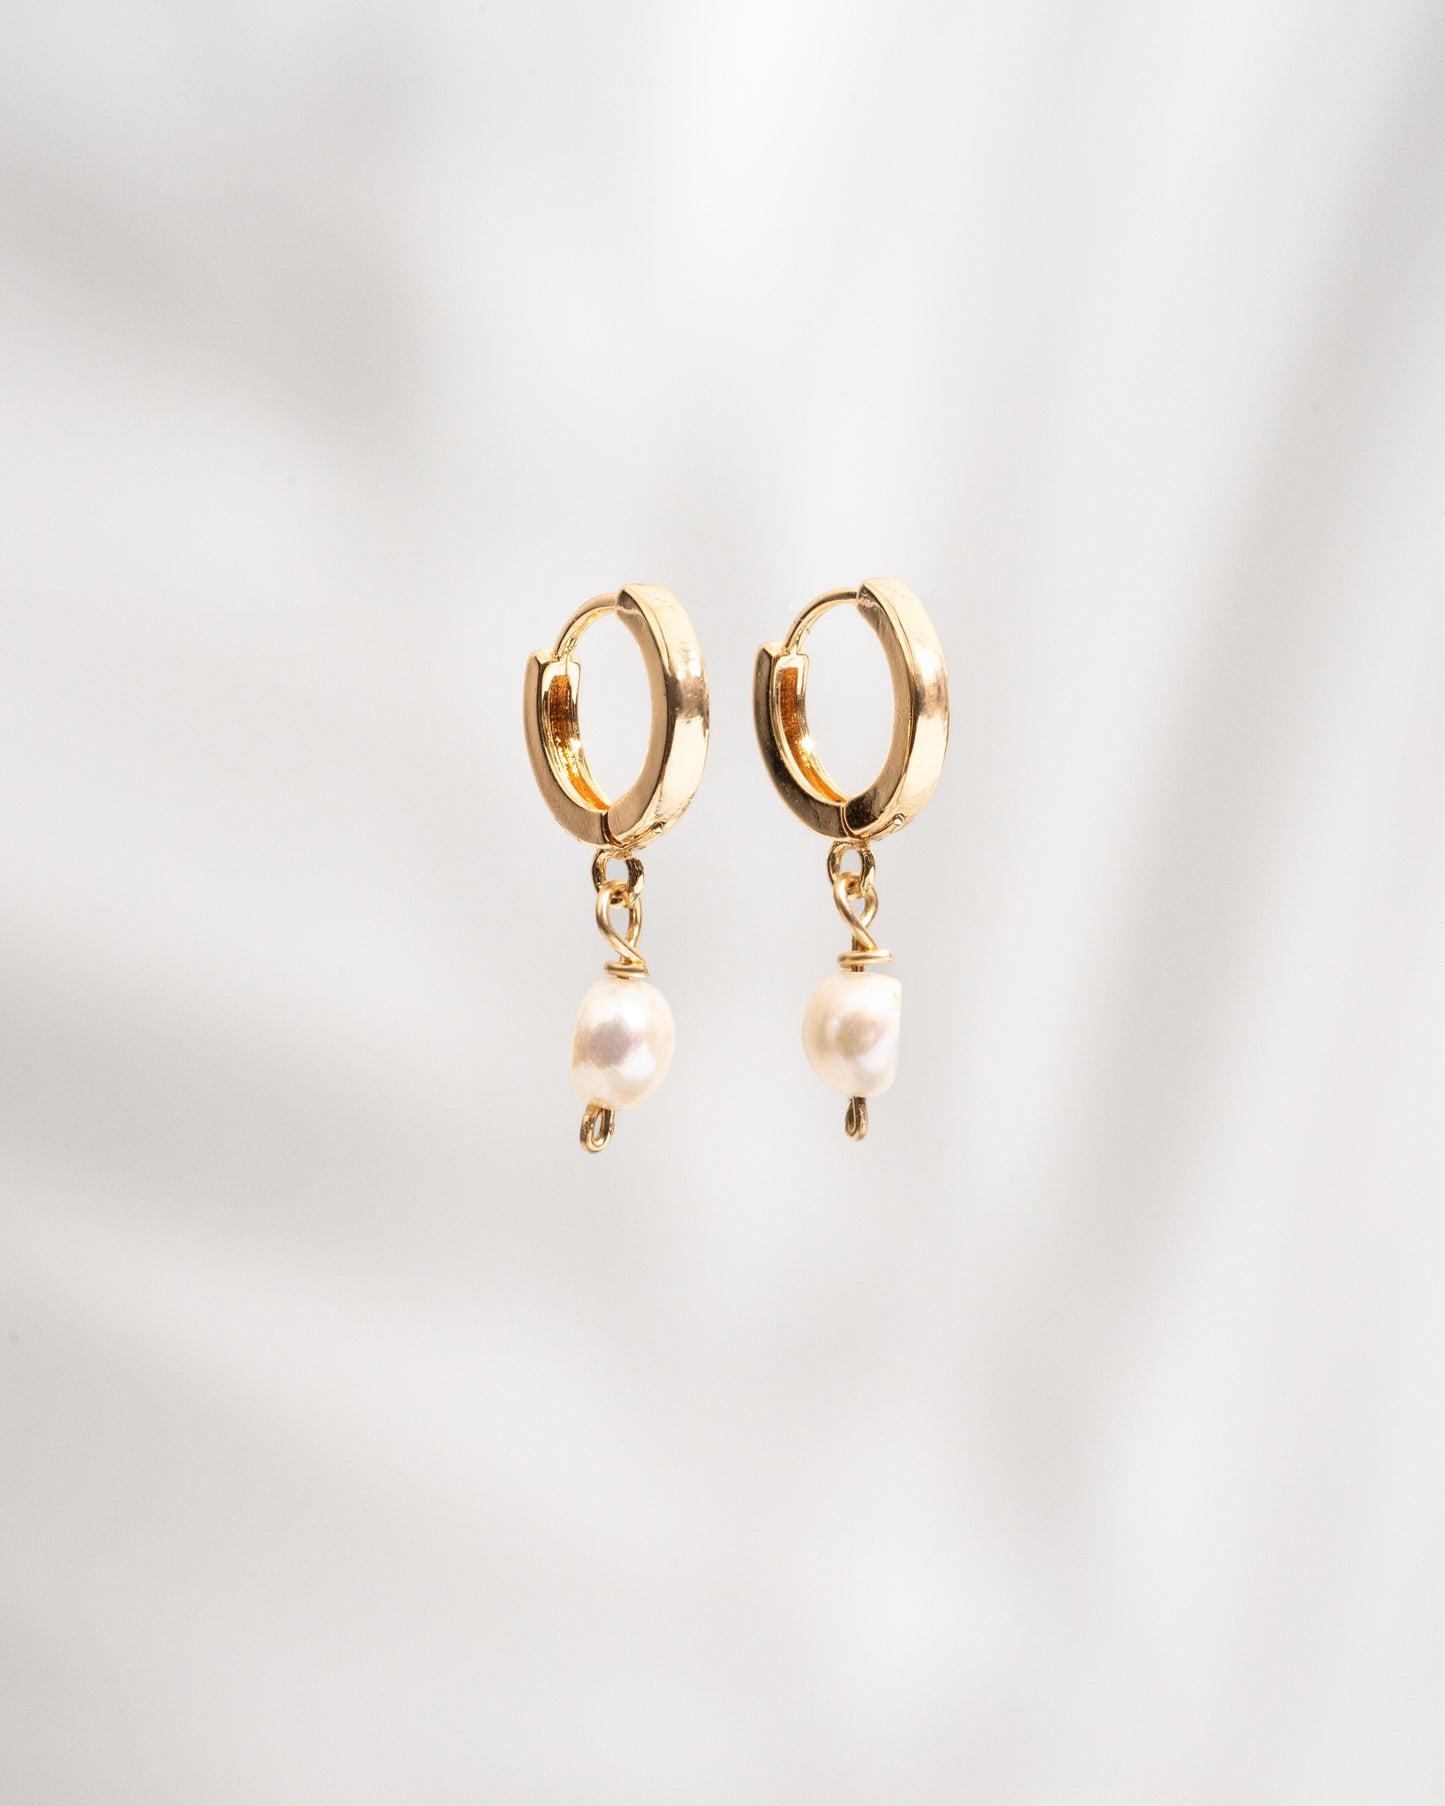 Oceana Earrings- Waterproof Freshwater Pearl Huggie Earrings in 14K Gold Fill